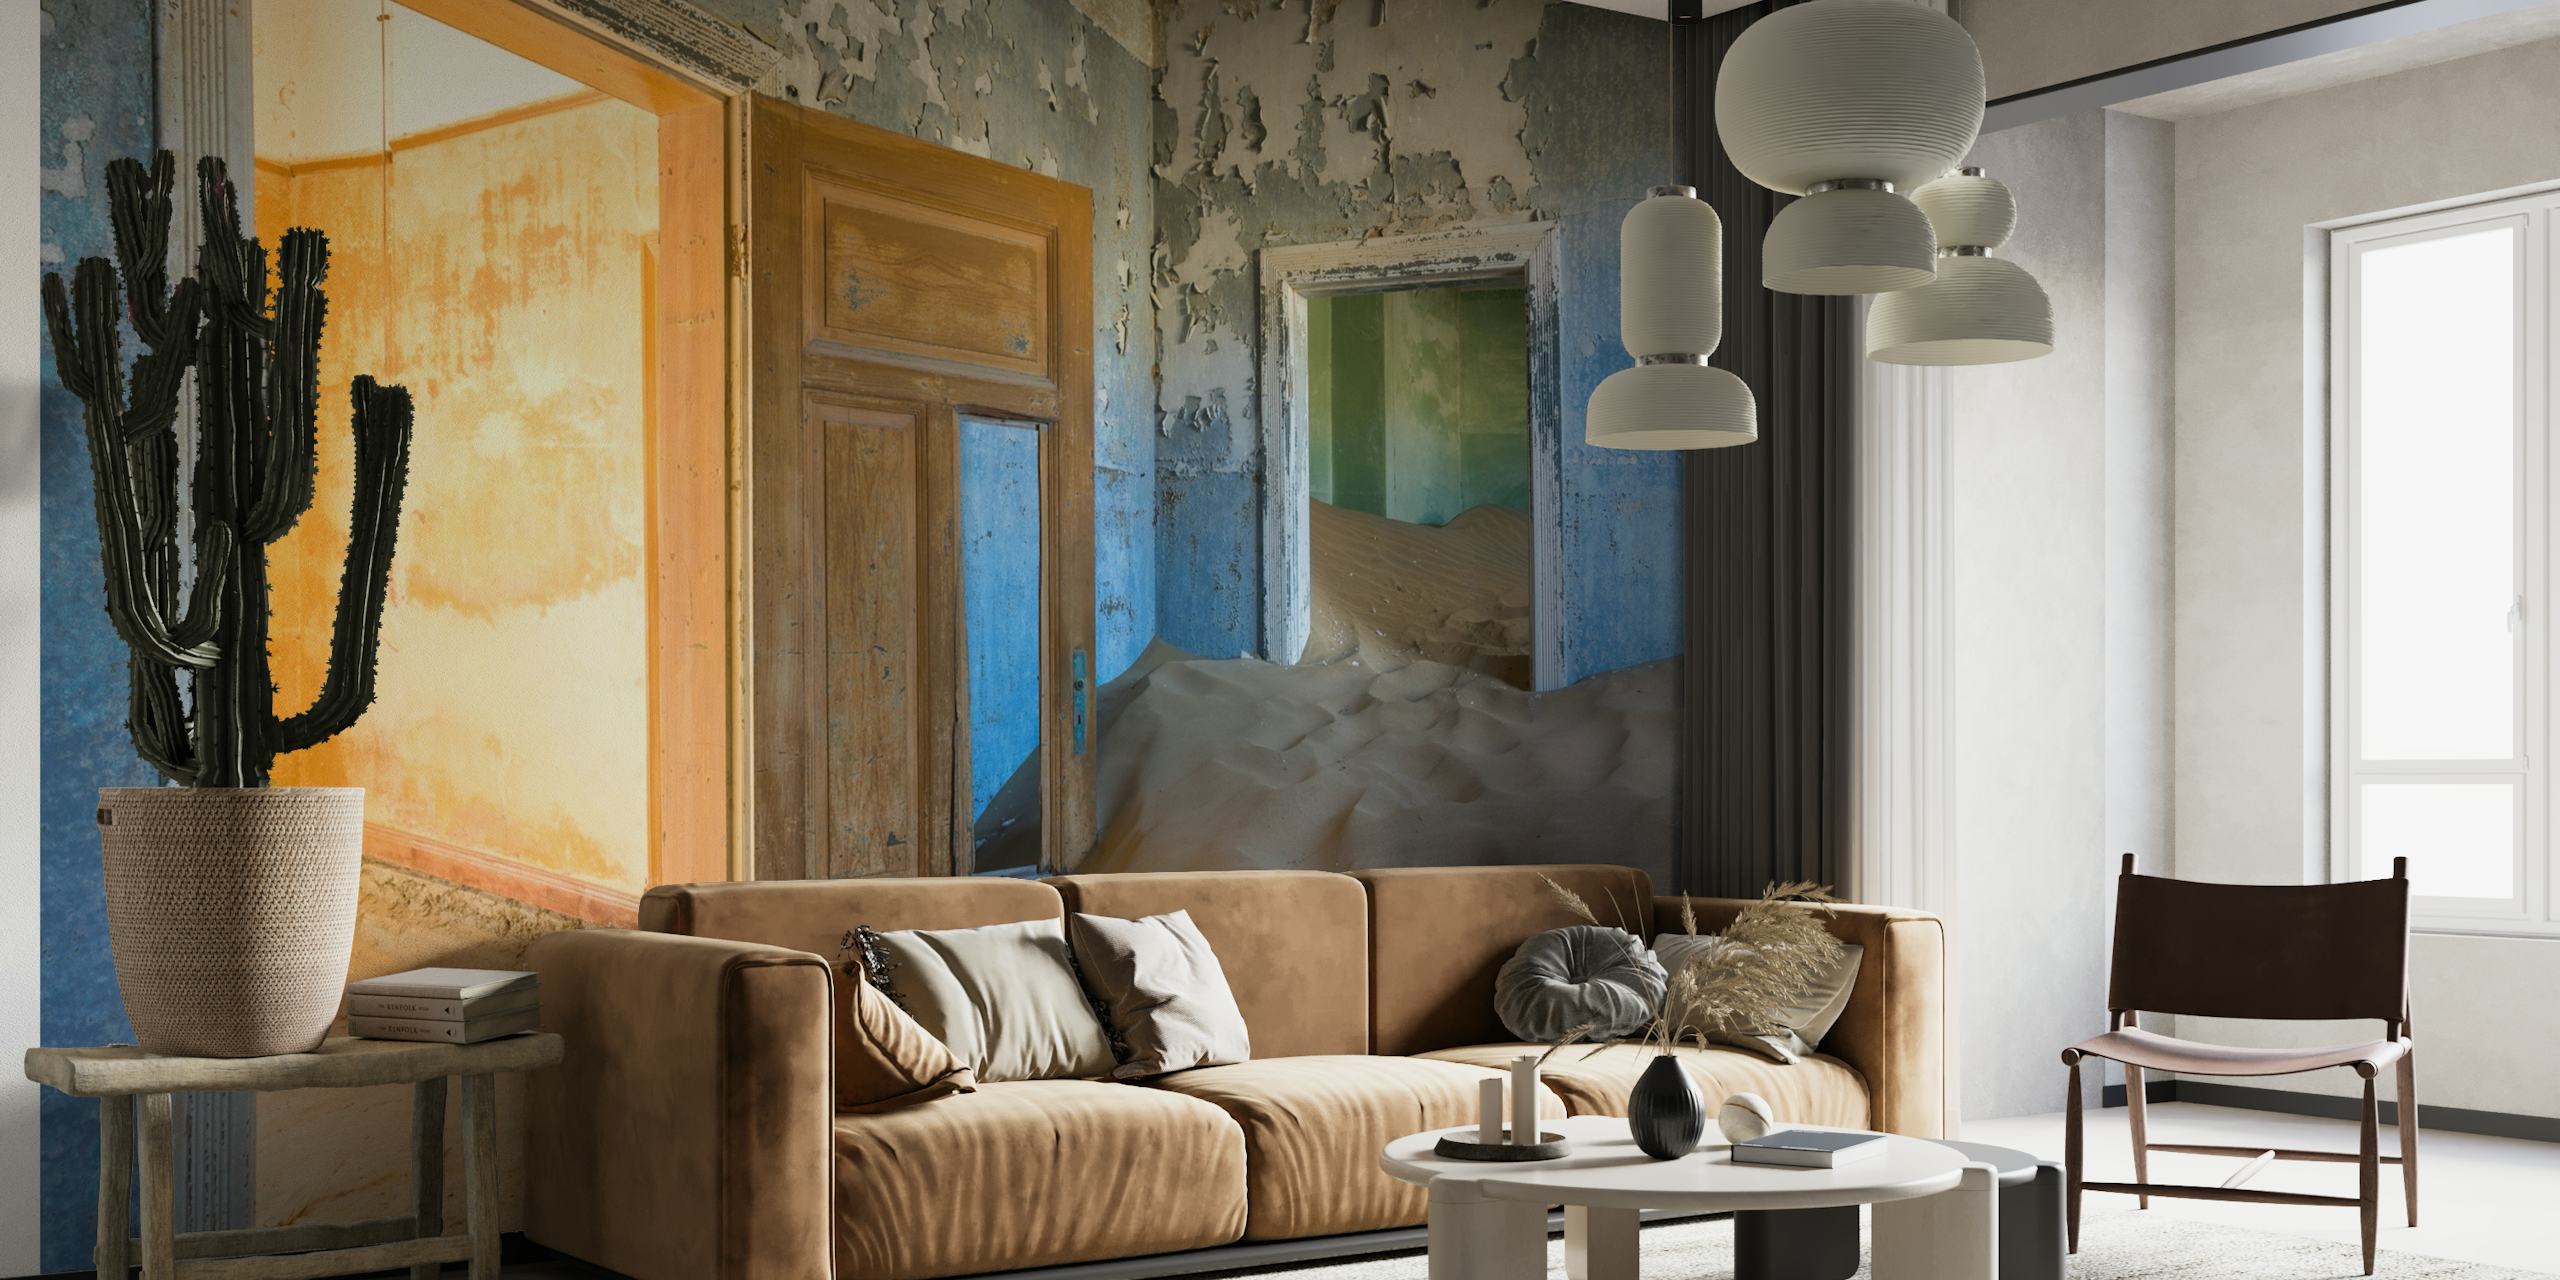 Forladt værelse med sand på gulvet og sollys, der skinner gennem døråbninger, vægmaleri